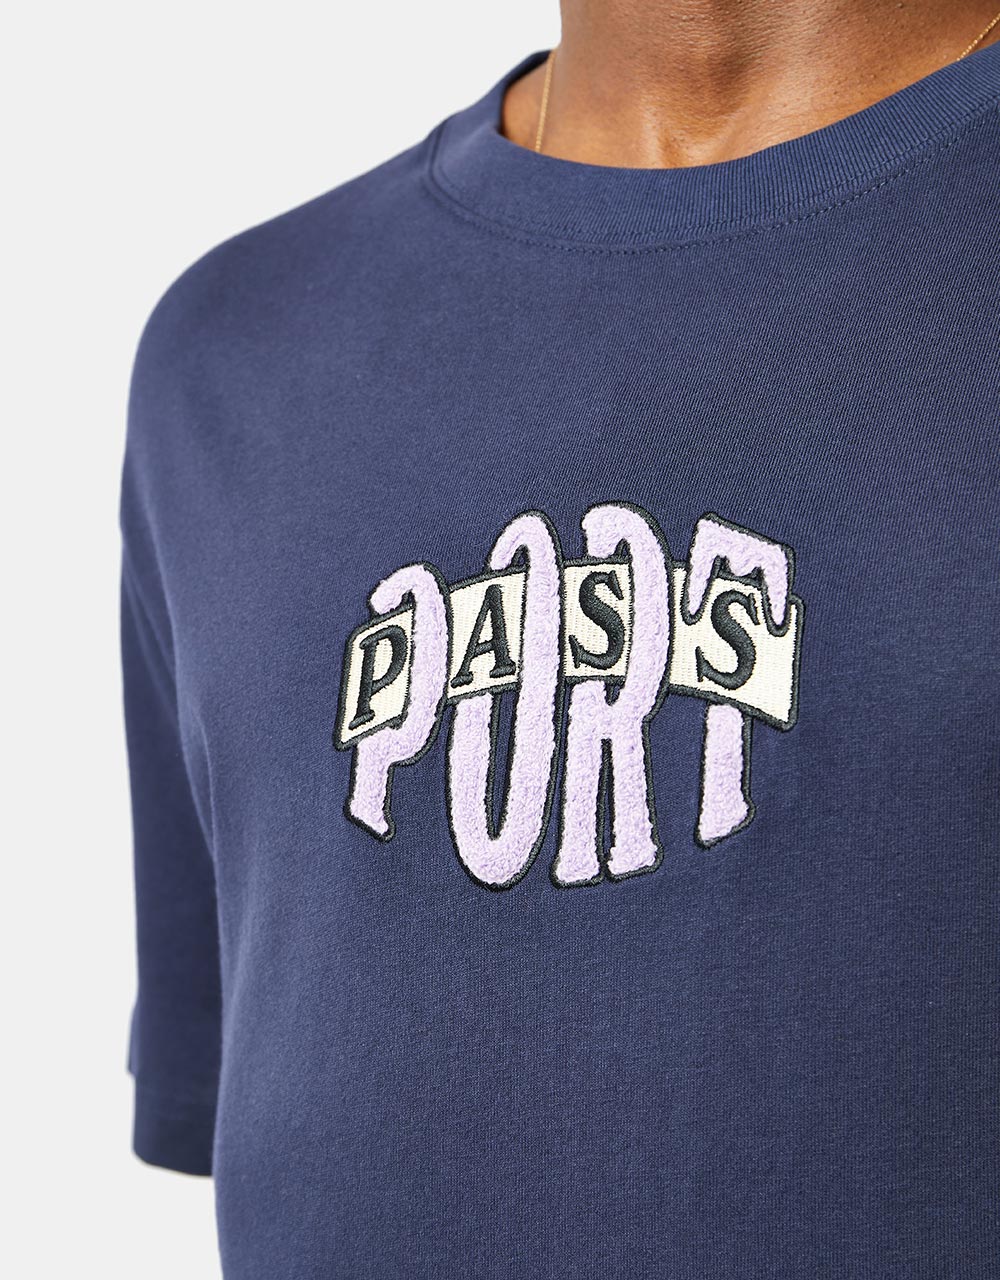 Pass Port Bulb Logo T-Shirt - Navy